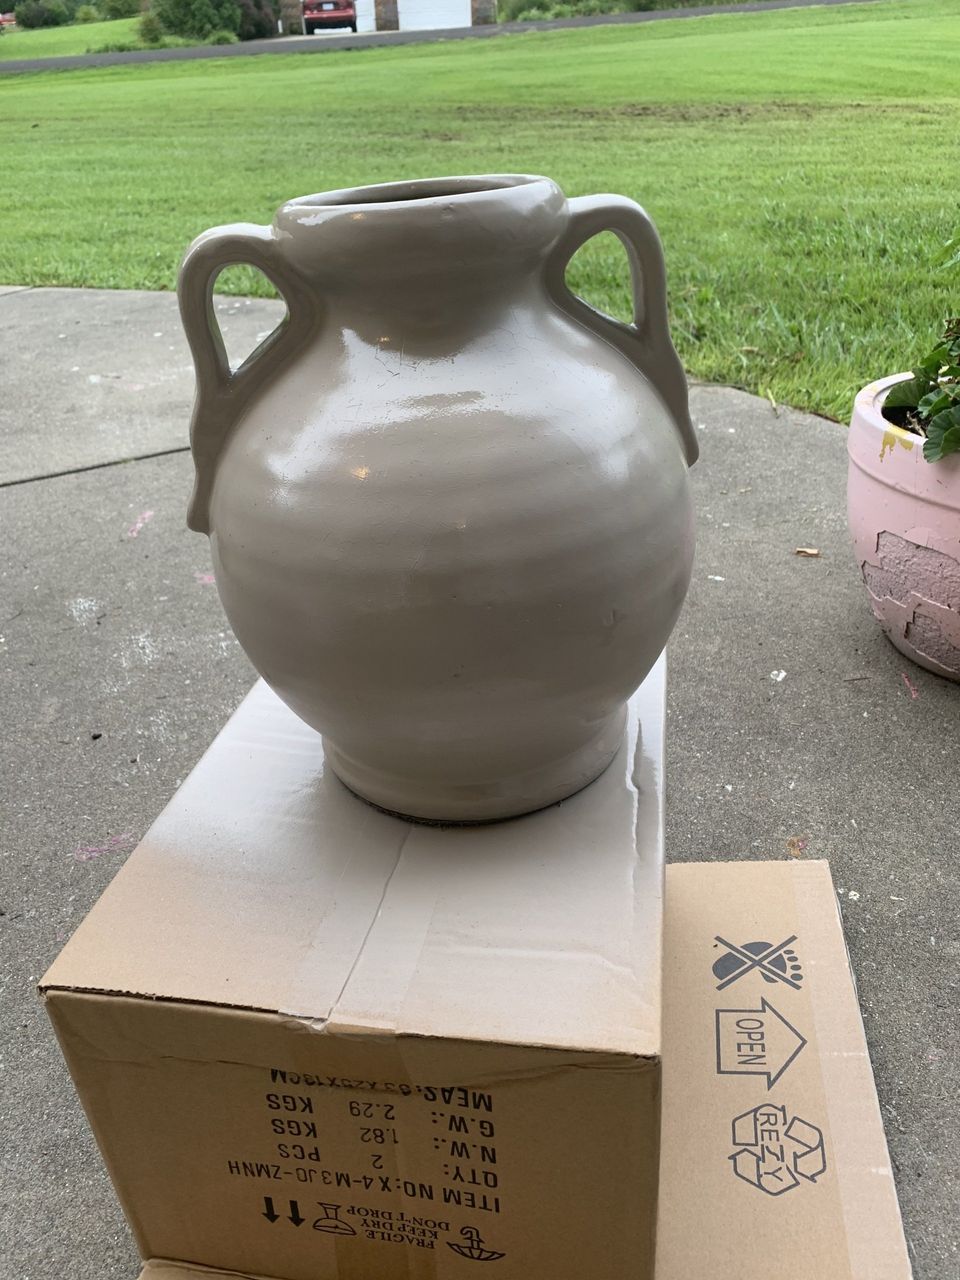 spray painted tan vase